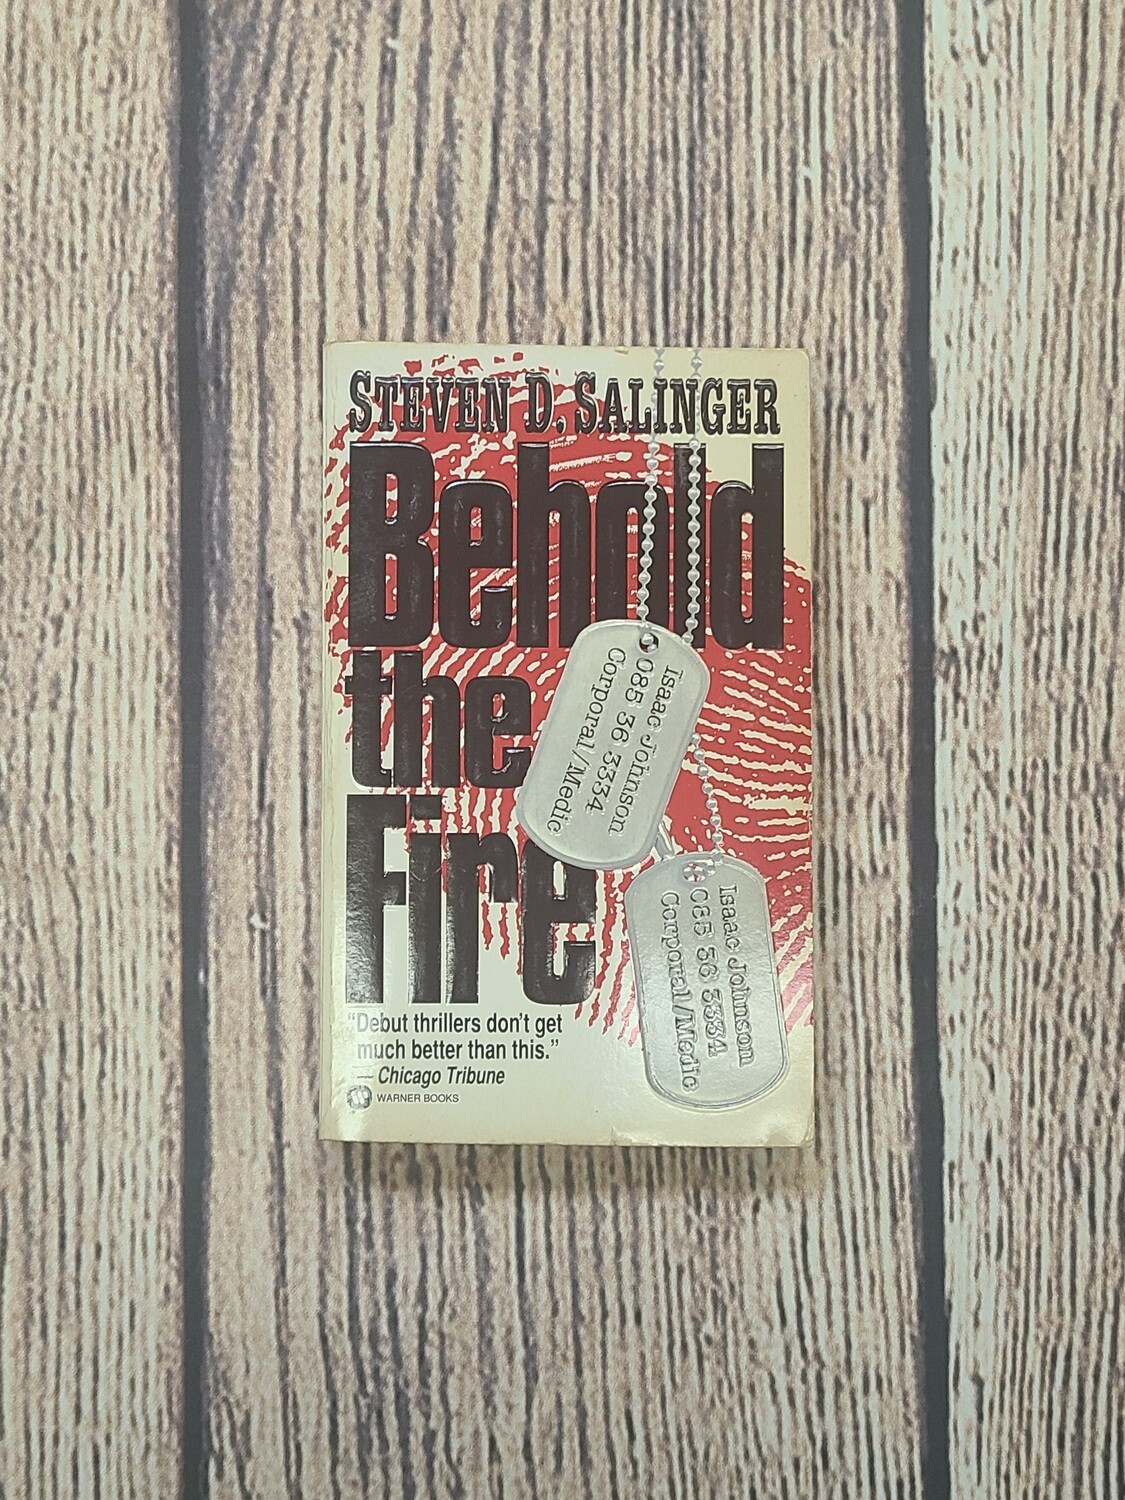 Behold the Fire by Steven D. Salinger